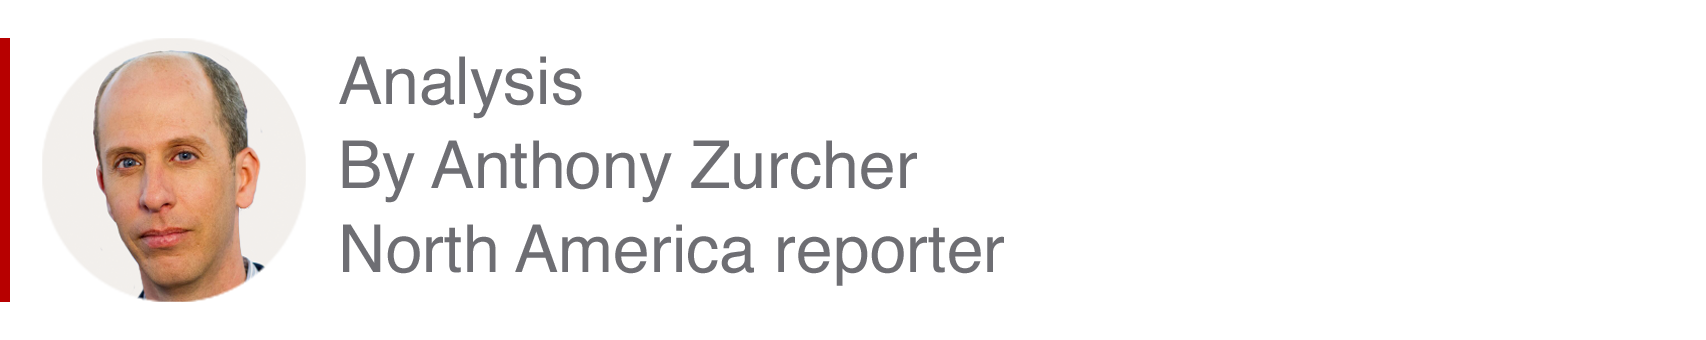 Caja analizadora de Anthony Zurcher, reportero de Norteamérica